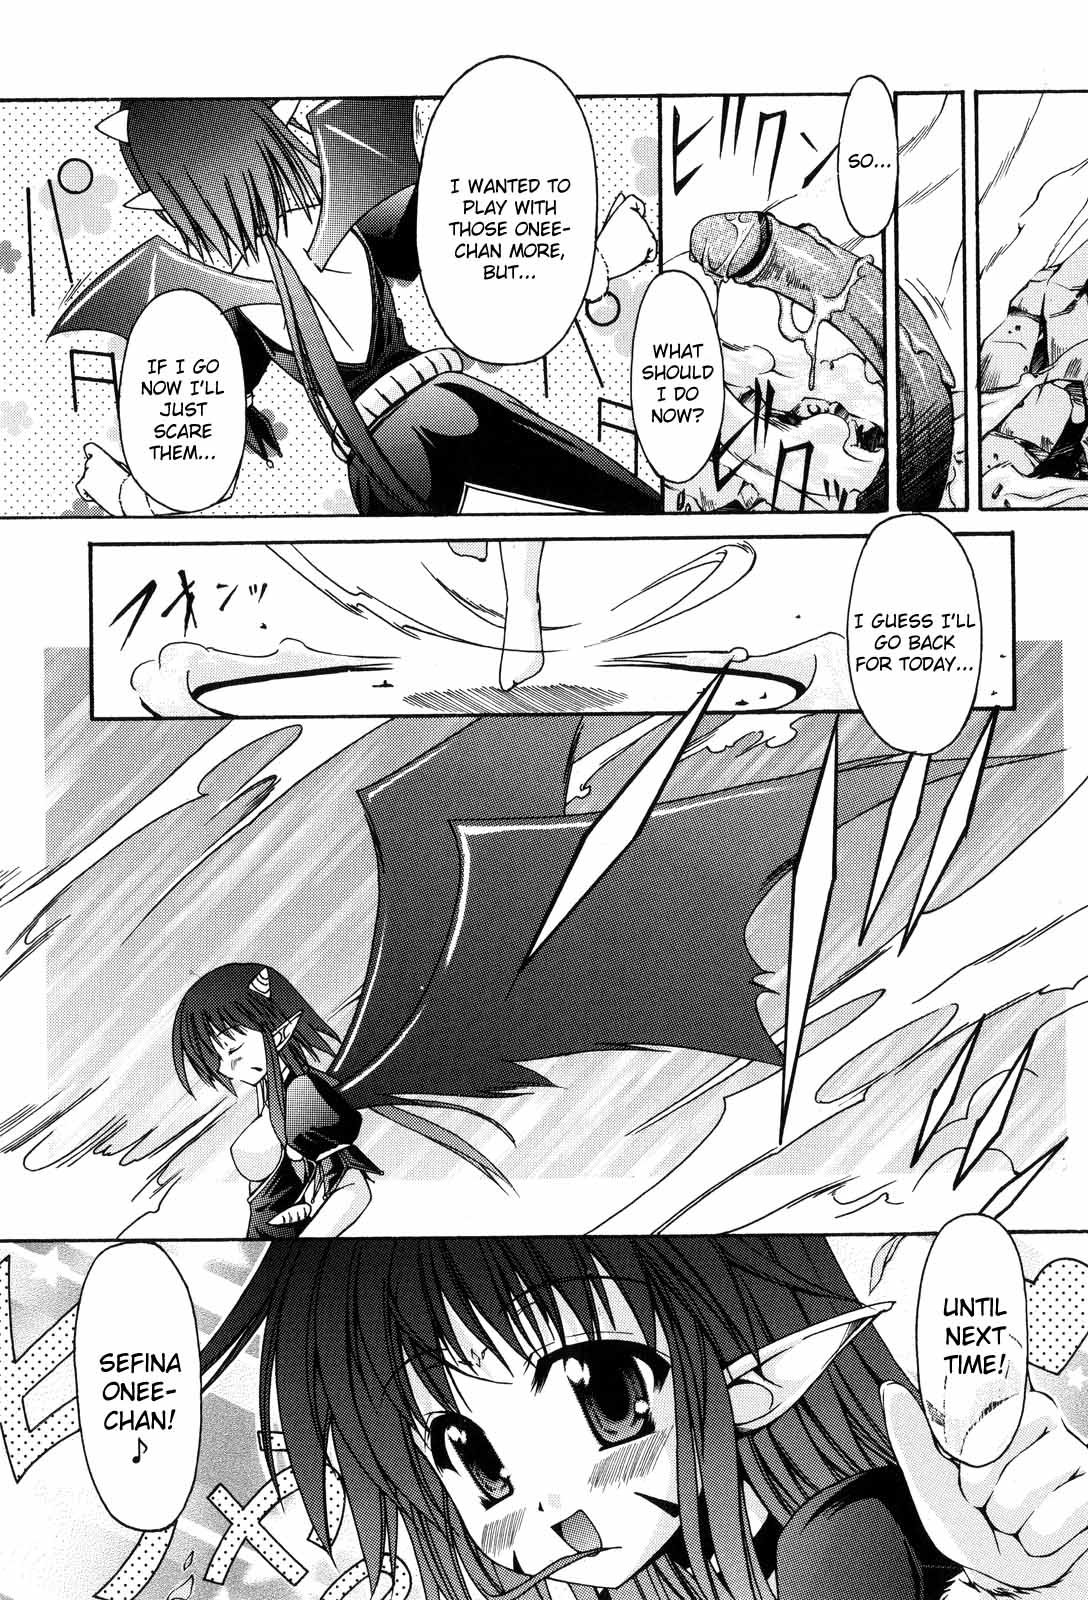 Sacred Feather 170 hentai manga